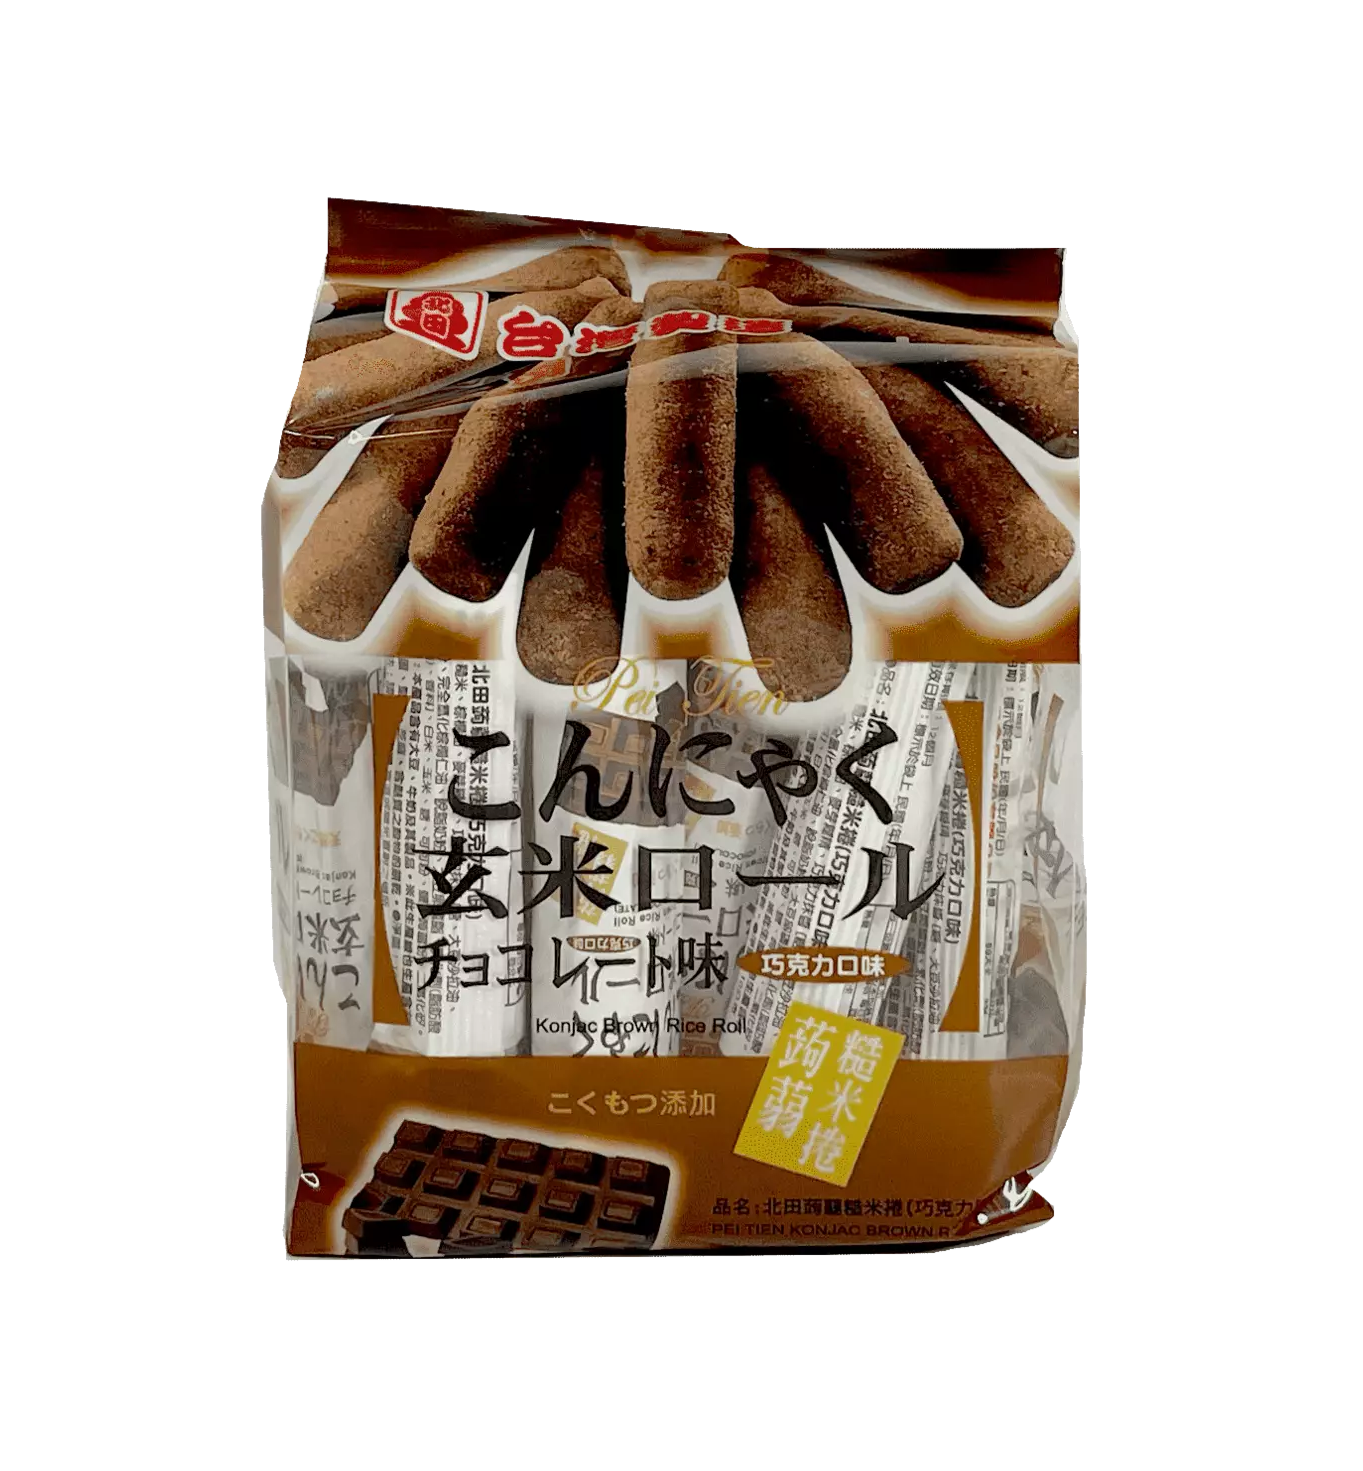 零食 巧克力味糙米卷 160g 培田 台湾